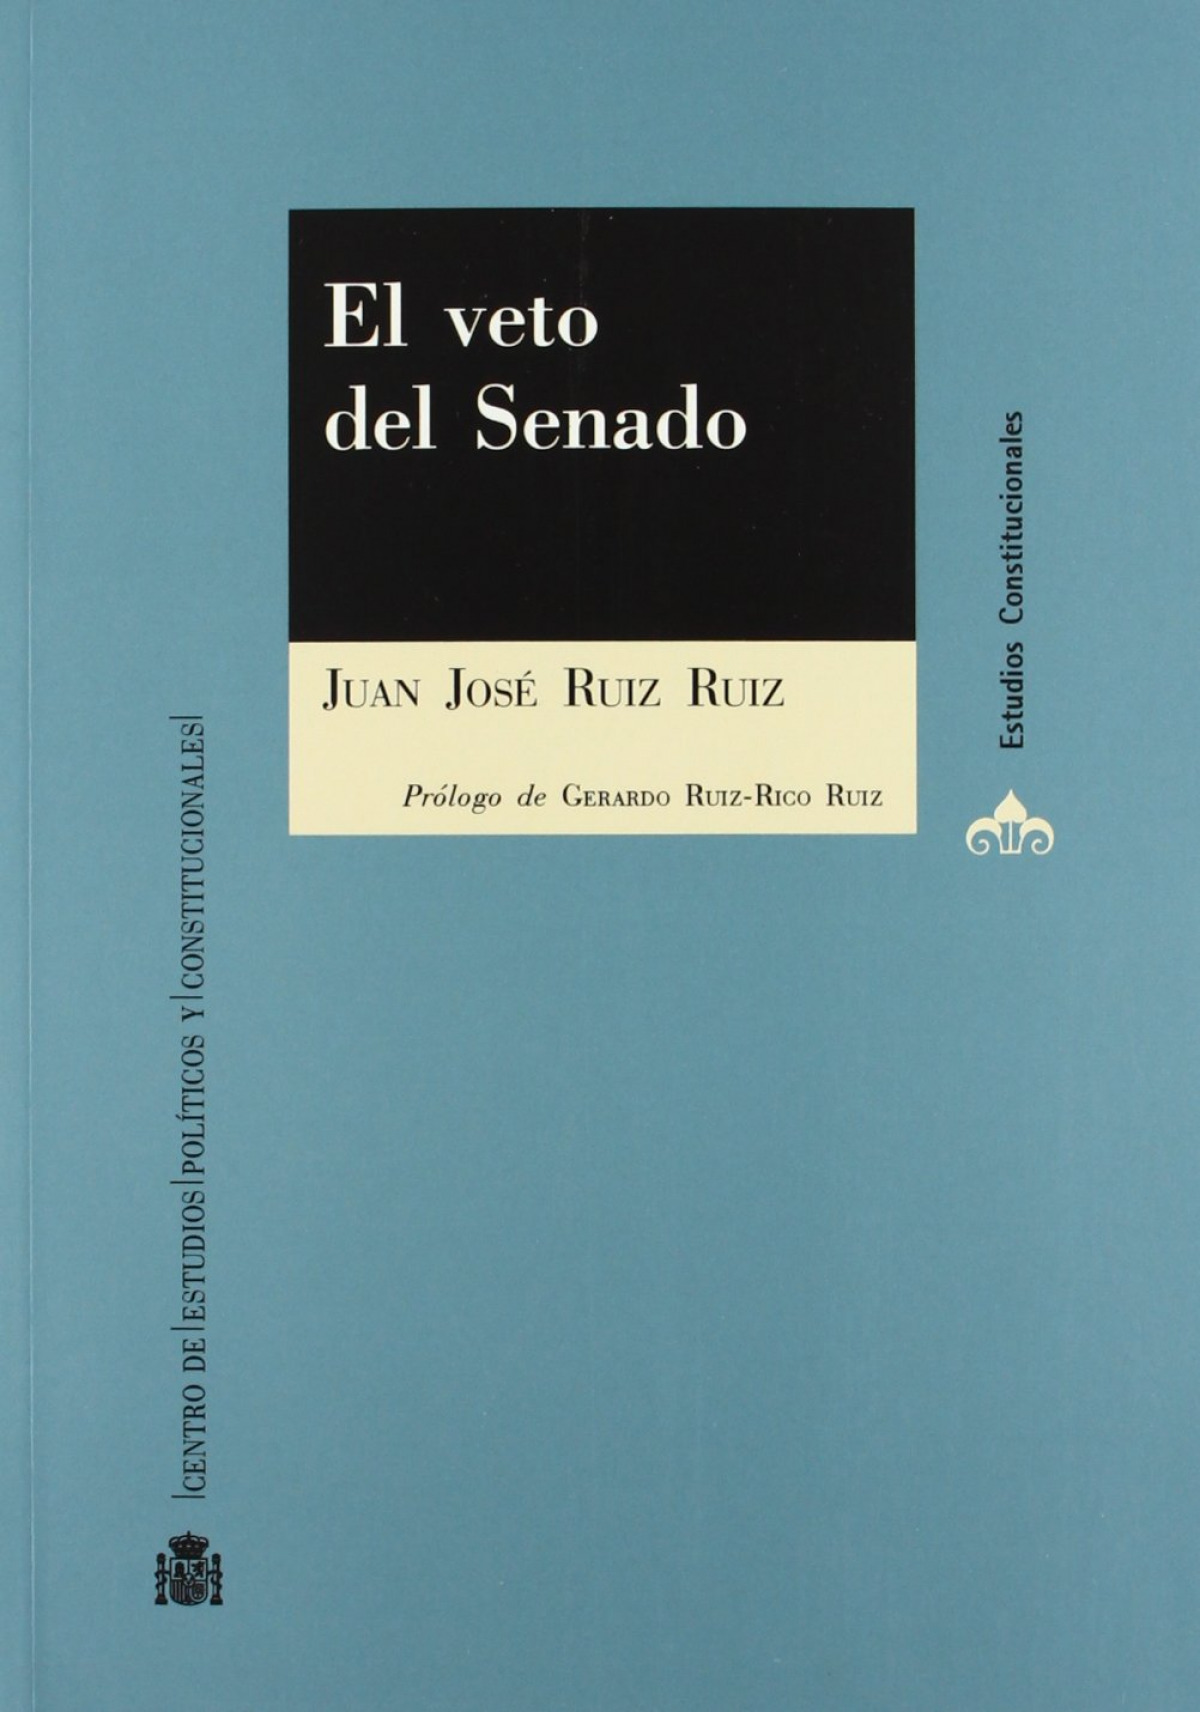 El veto del Senado - Ruiz Ruiz, Juan José